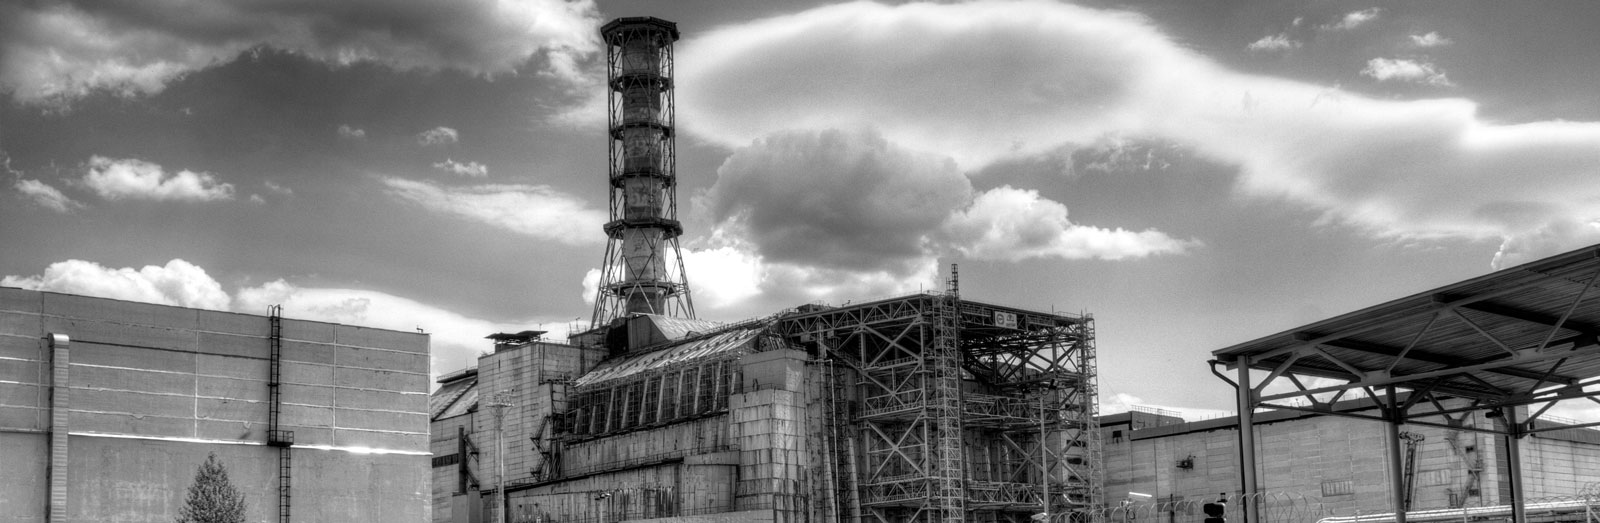 Доклад по теме Современная оценка аварии на чернобыльской АЭС. Чернобыль и политика 